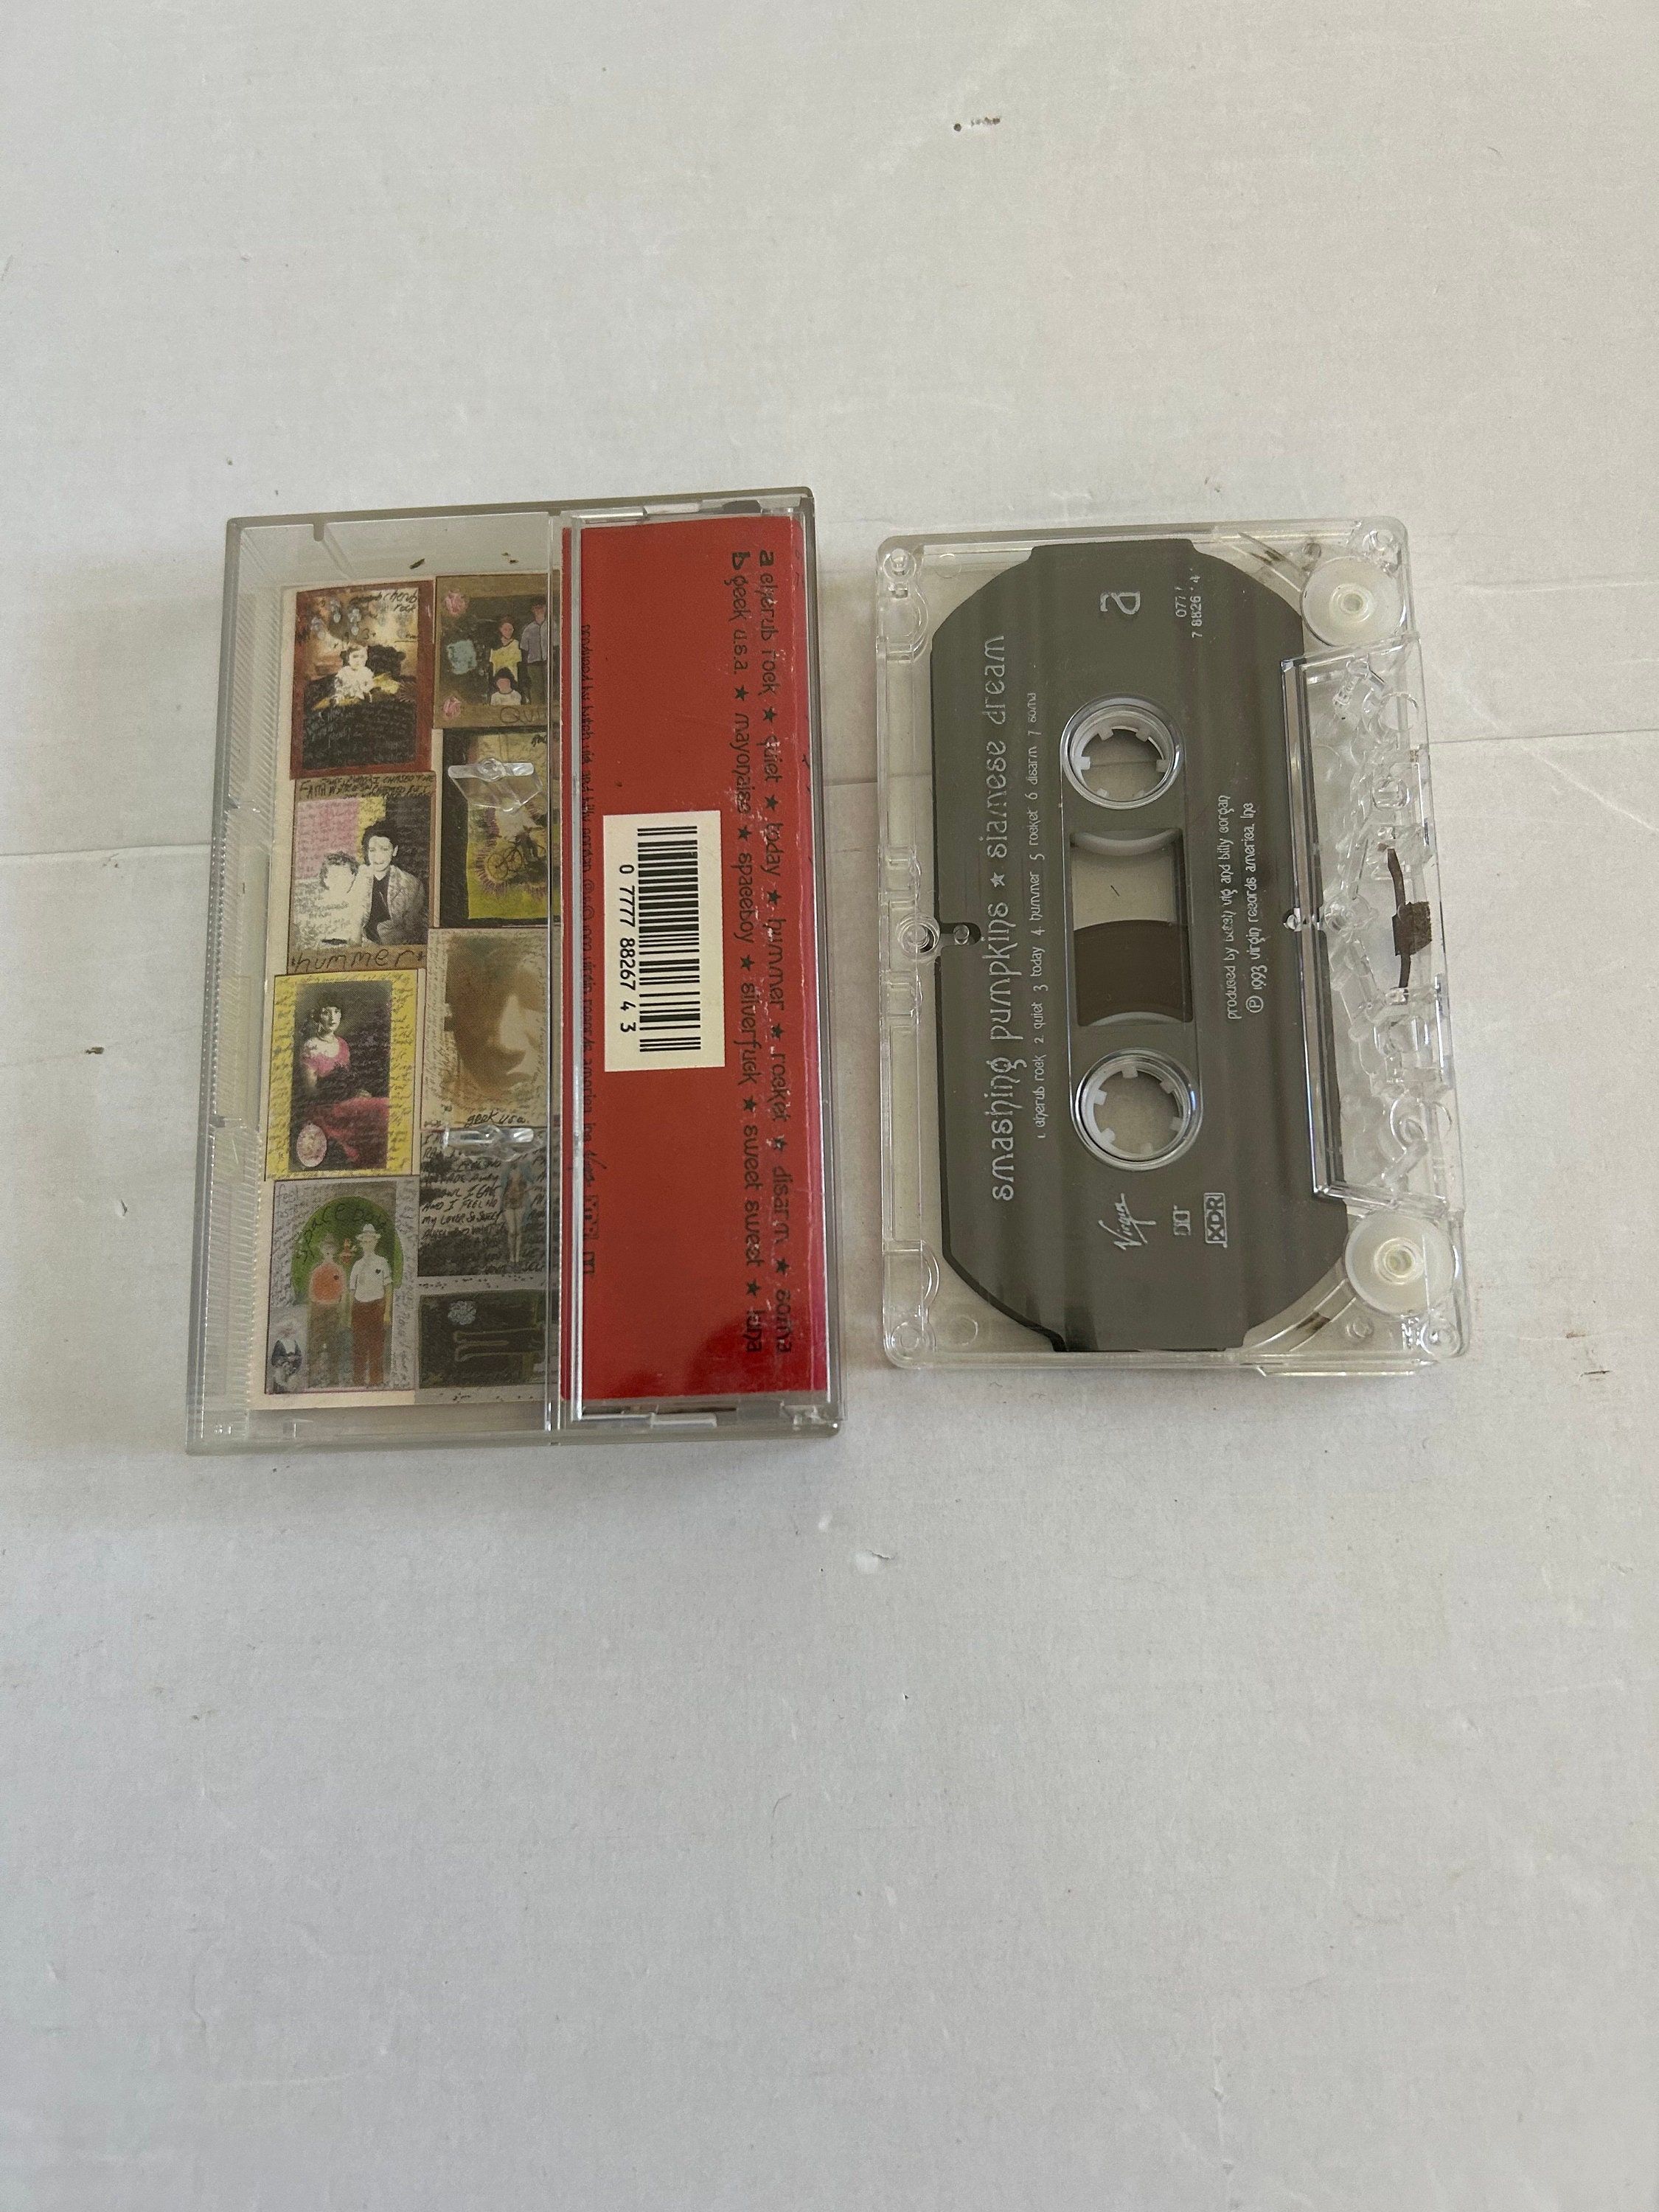 SMASHING PUMPKINS siamese dream - Rare Tape Cassette - Tested - No Cover